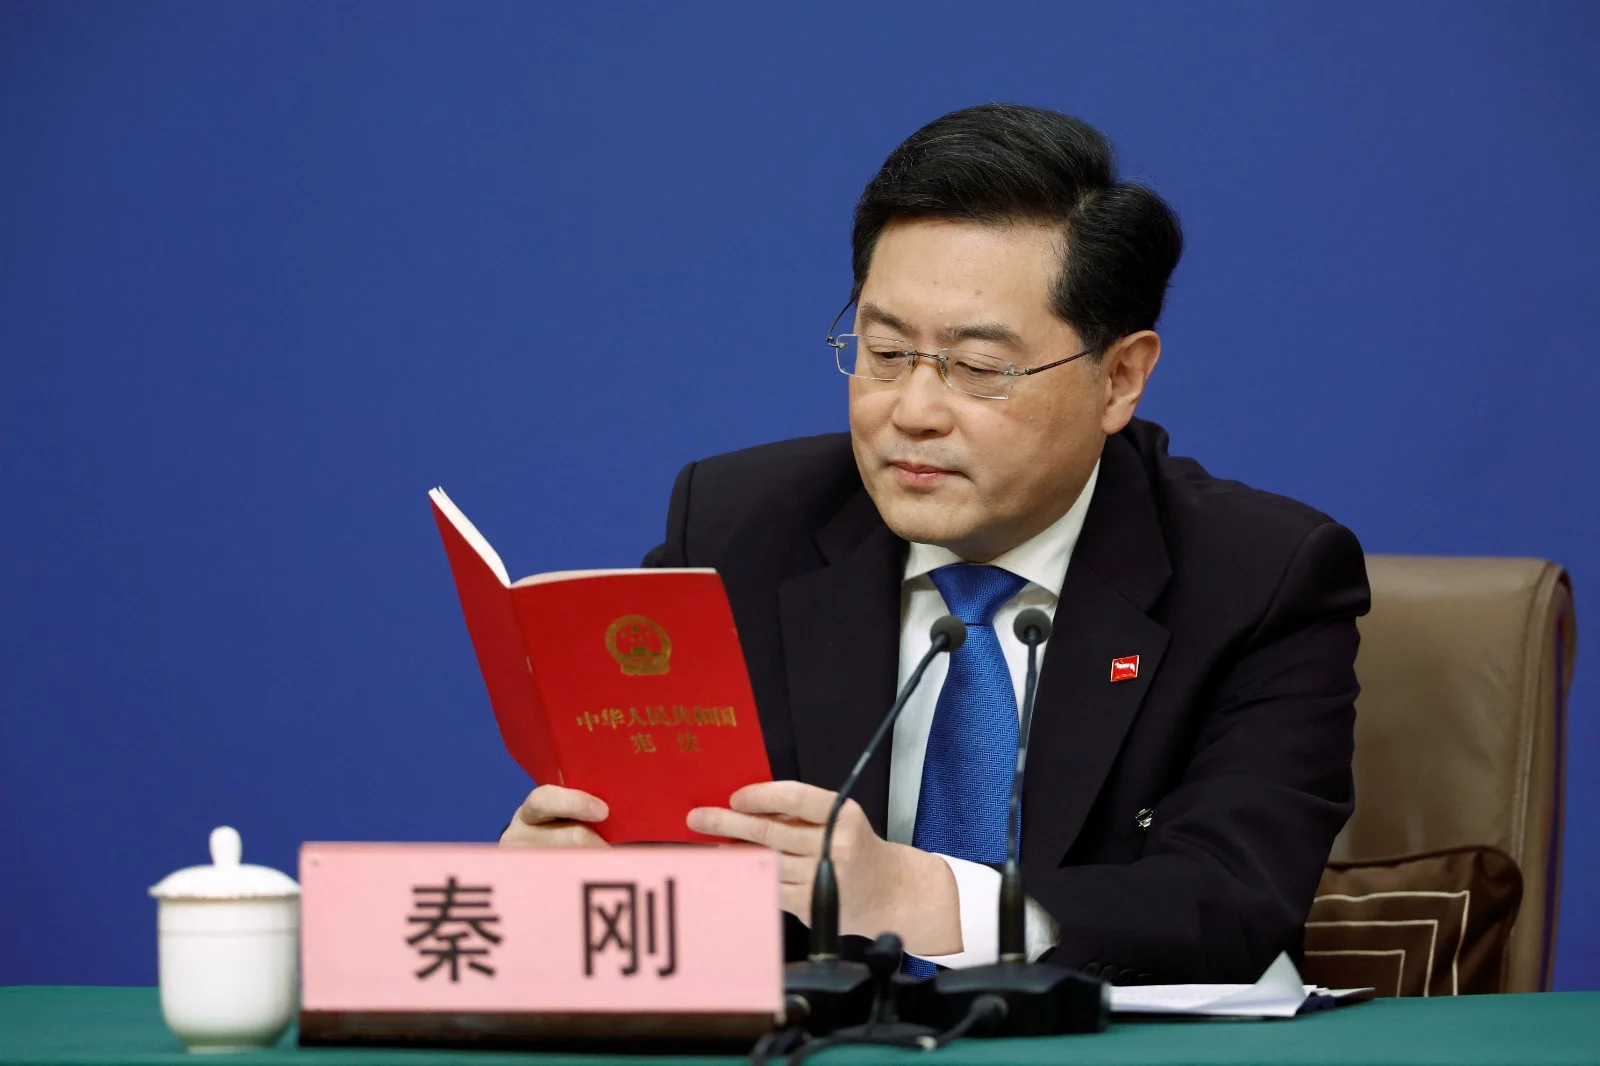 שר החוץ הסיני צ'ין גאנג